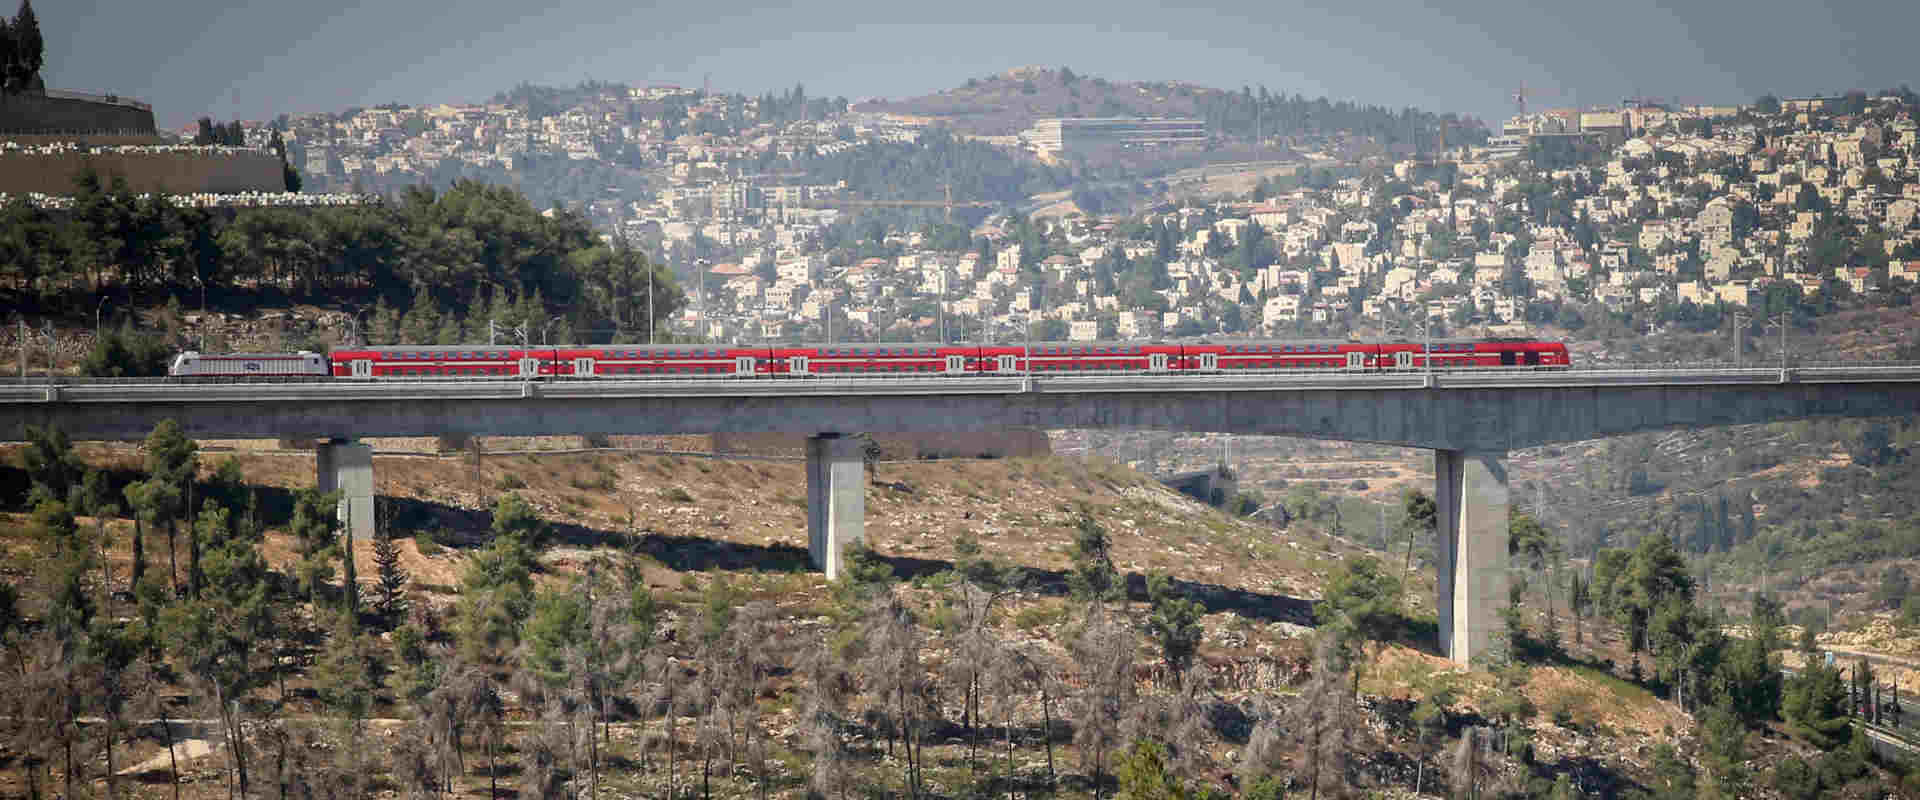 קו הרכבת לירושלים